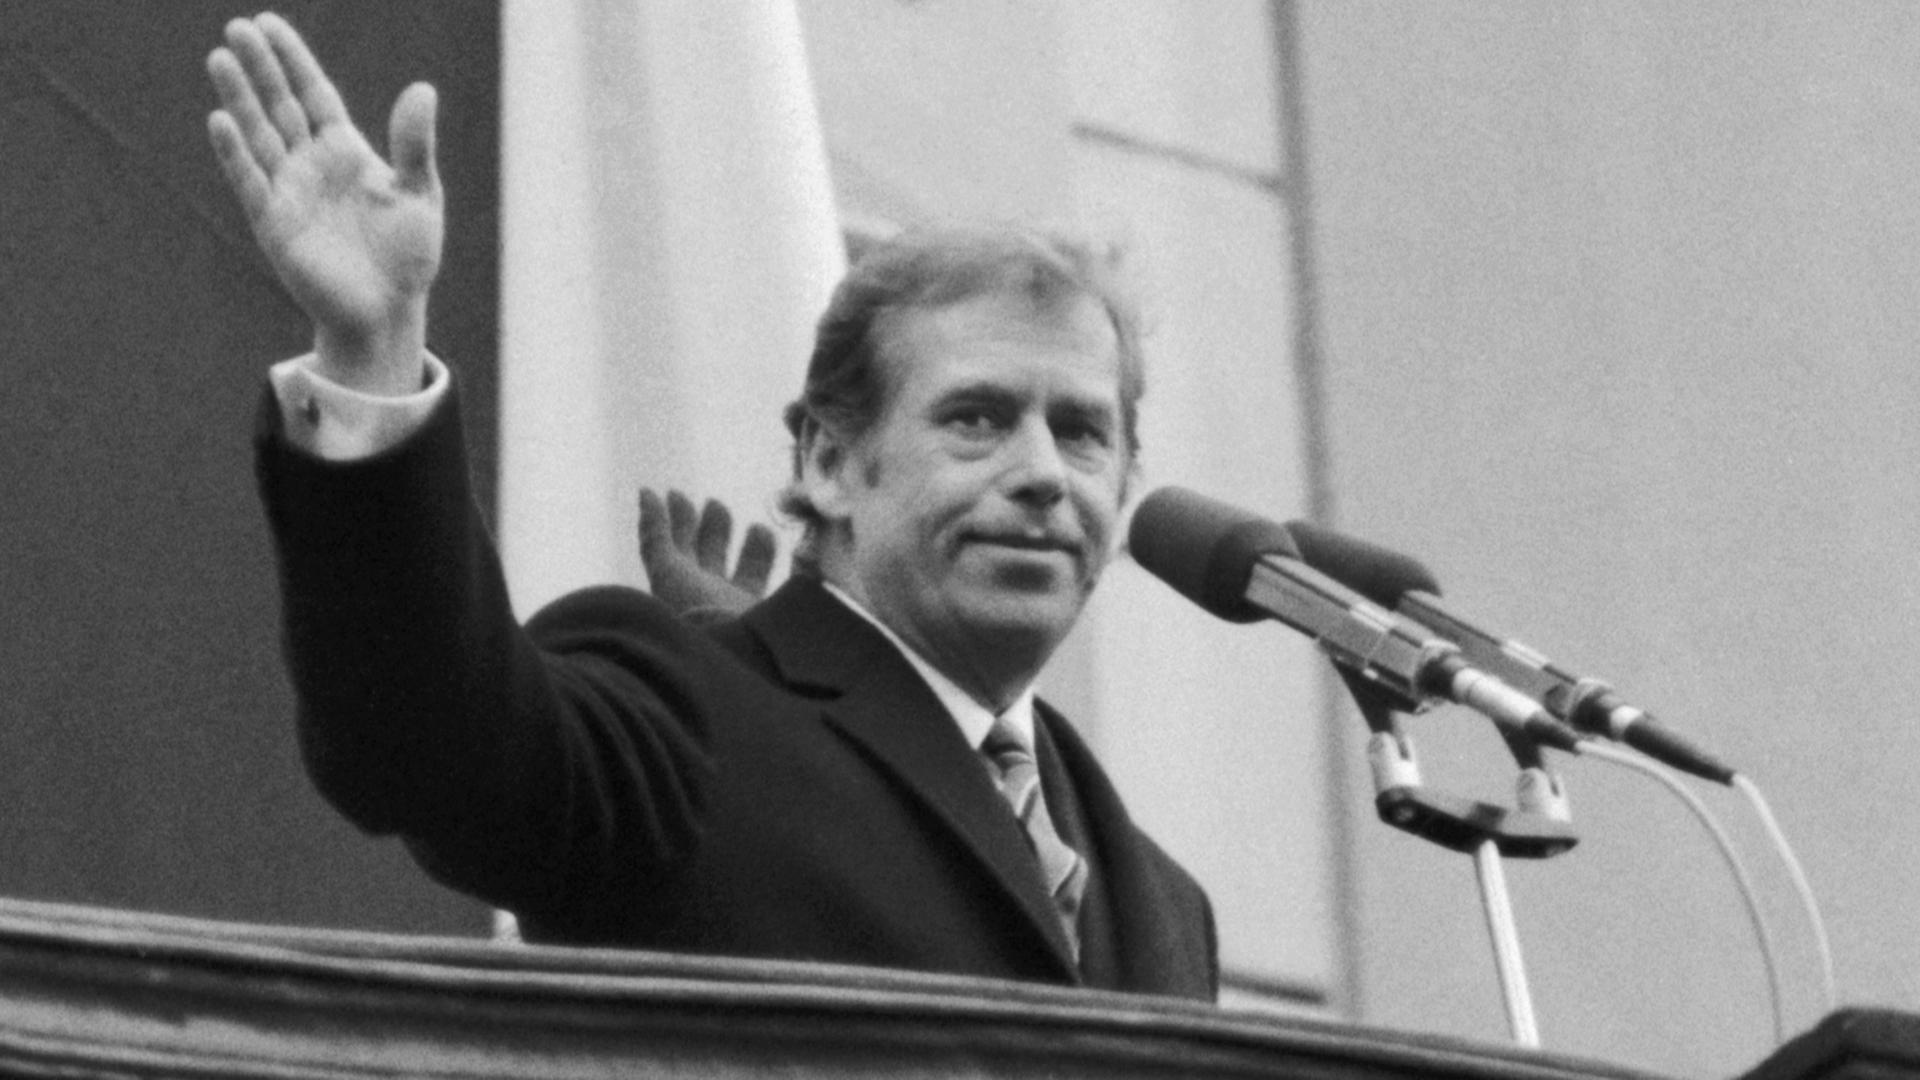  Václav Havel steht nach seiner Wahl zum Staatspräsidenten der Tschechoslowakei am 29.12.1989 auf einem Balkon und winkt.